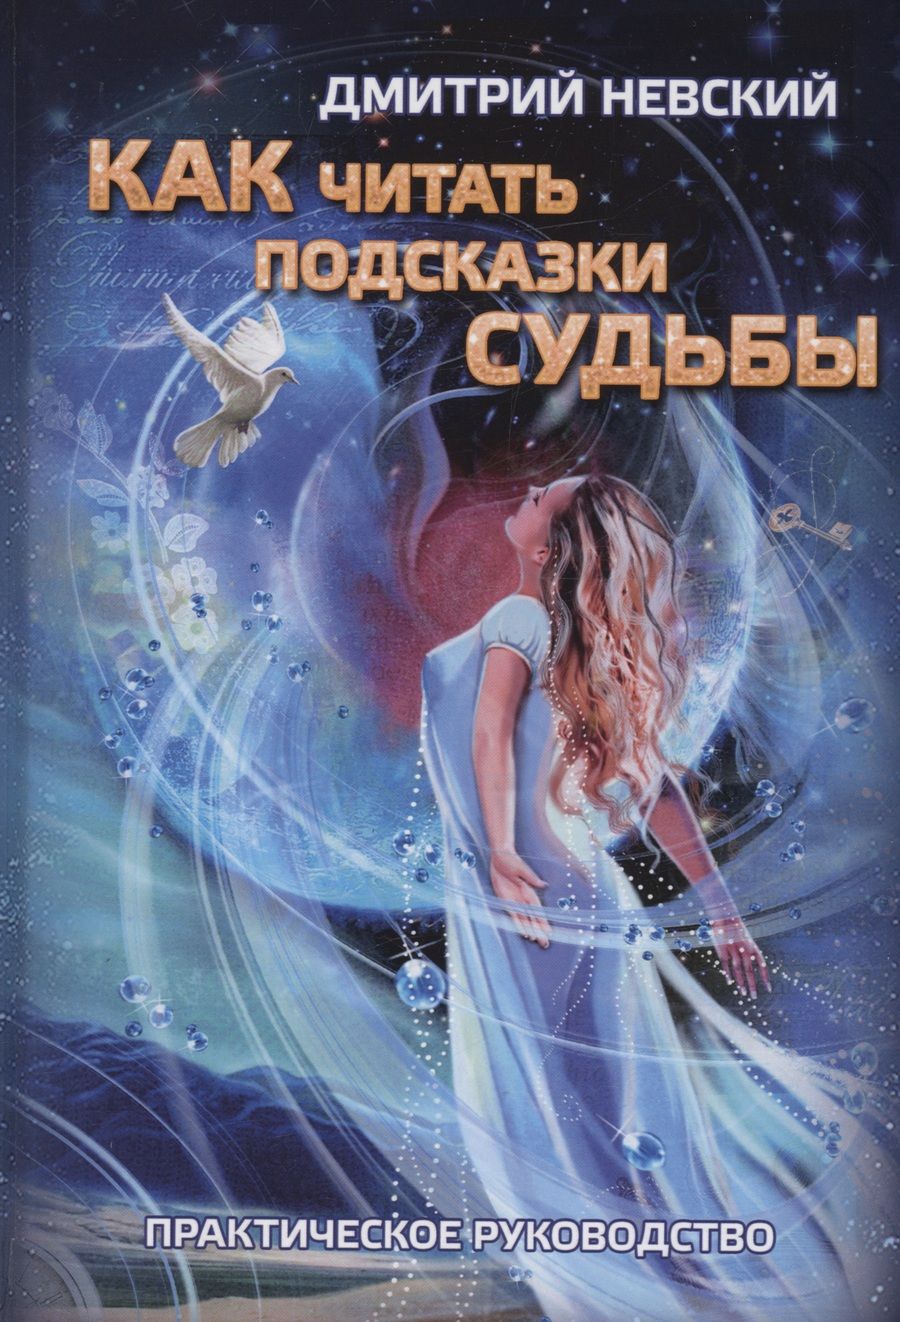 Обложка книги "Невский: Как читать подсказки Судьбы"